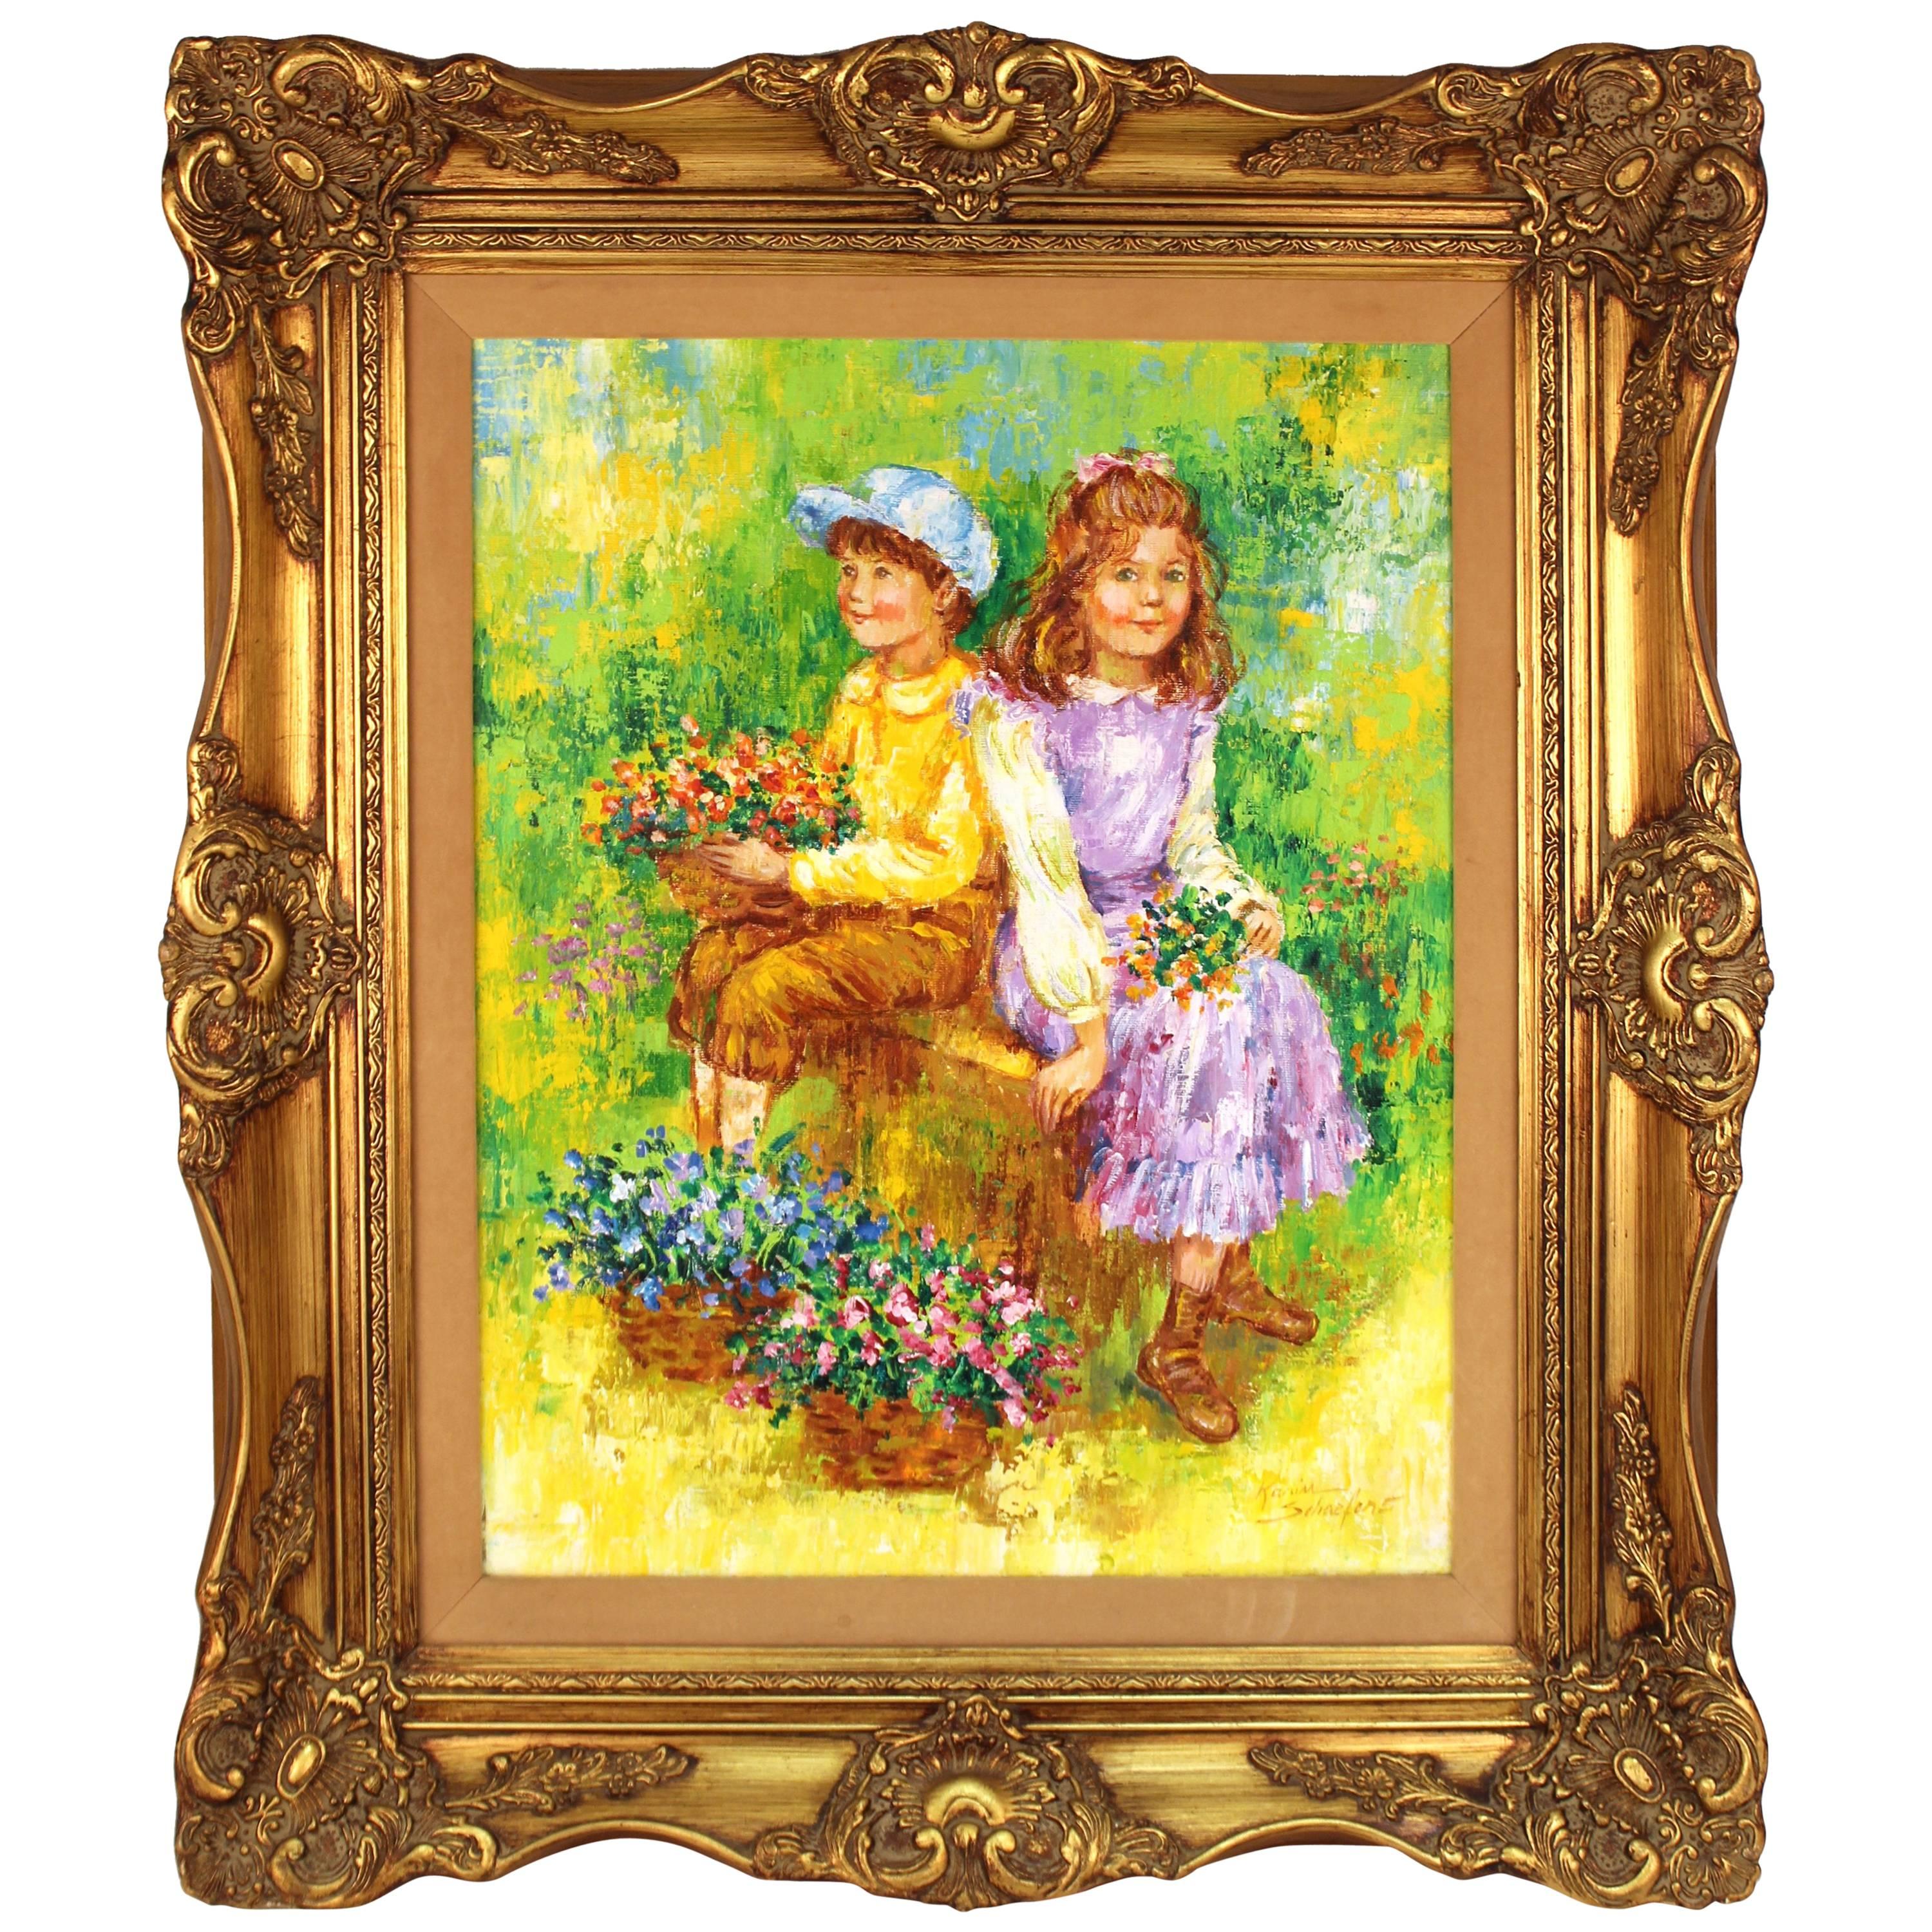  Peinture intitulée « Children Holding Flowers in a Field » (enfants tenant des fleurs dans un champ) de Karin Schaefers  en vente